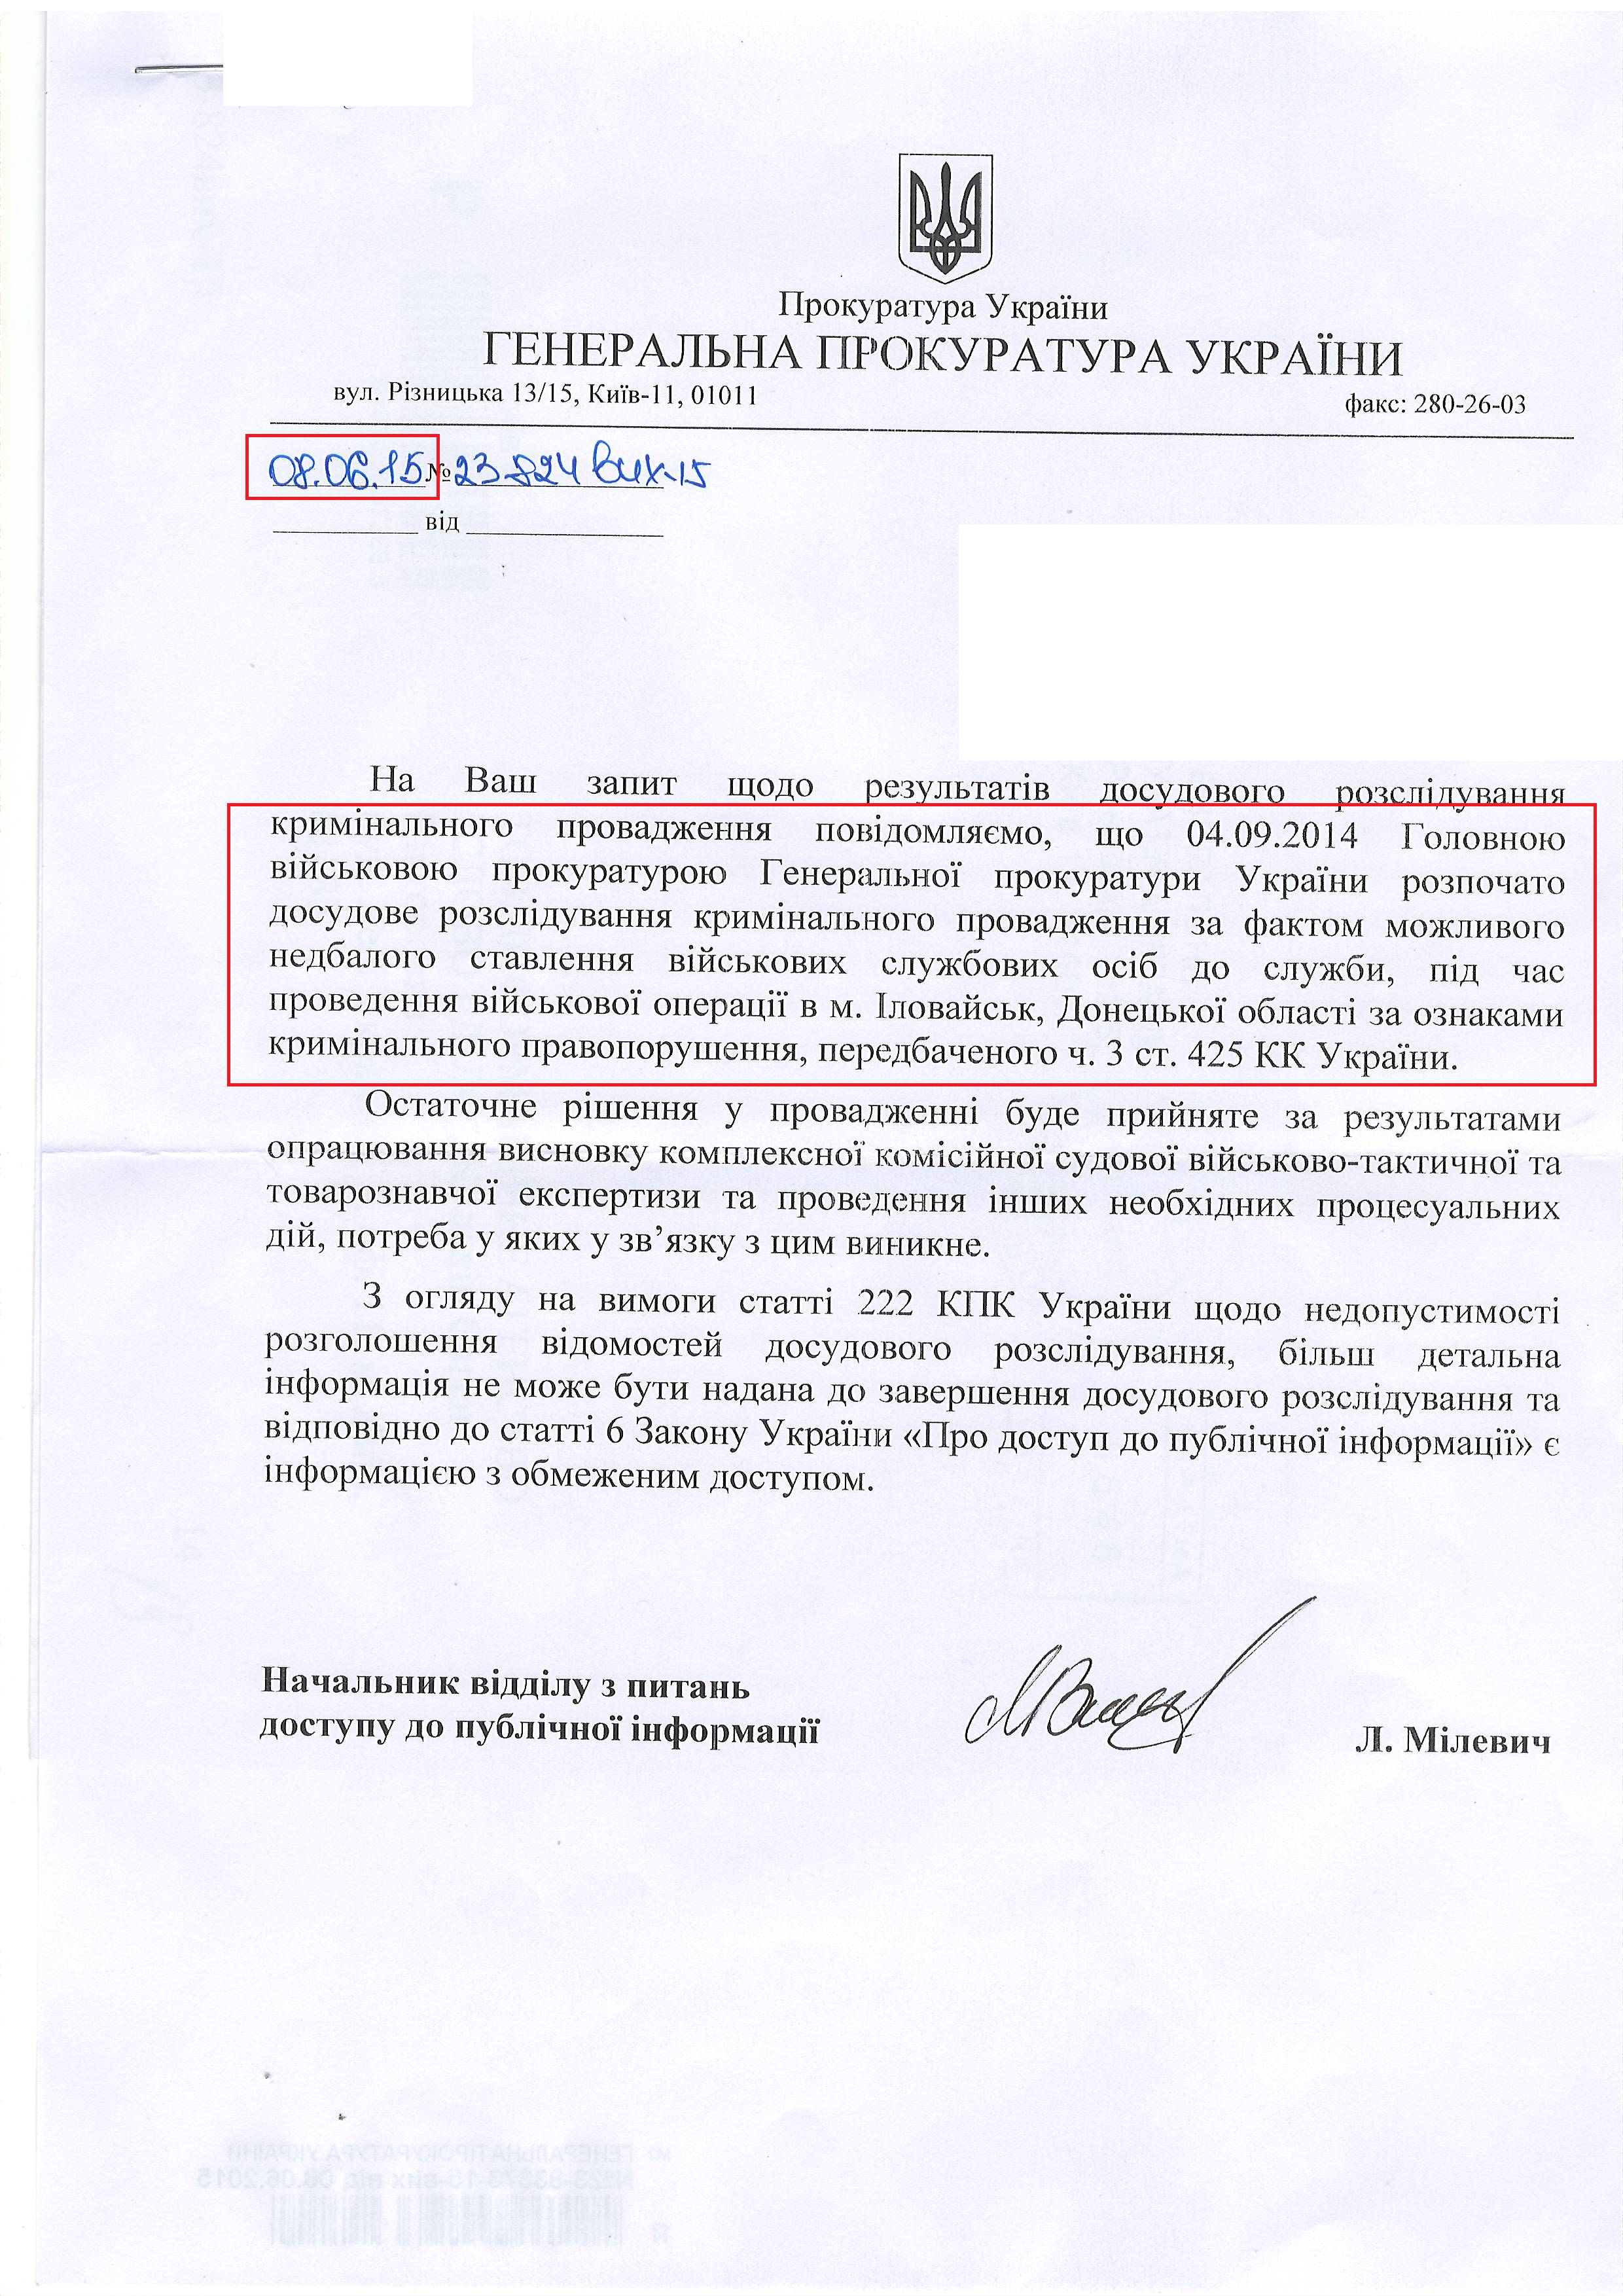 лист генеральної прокуратури України від 8 червня 2015 року